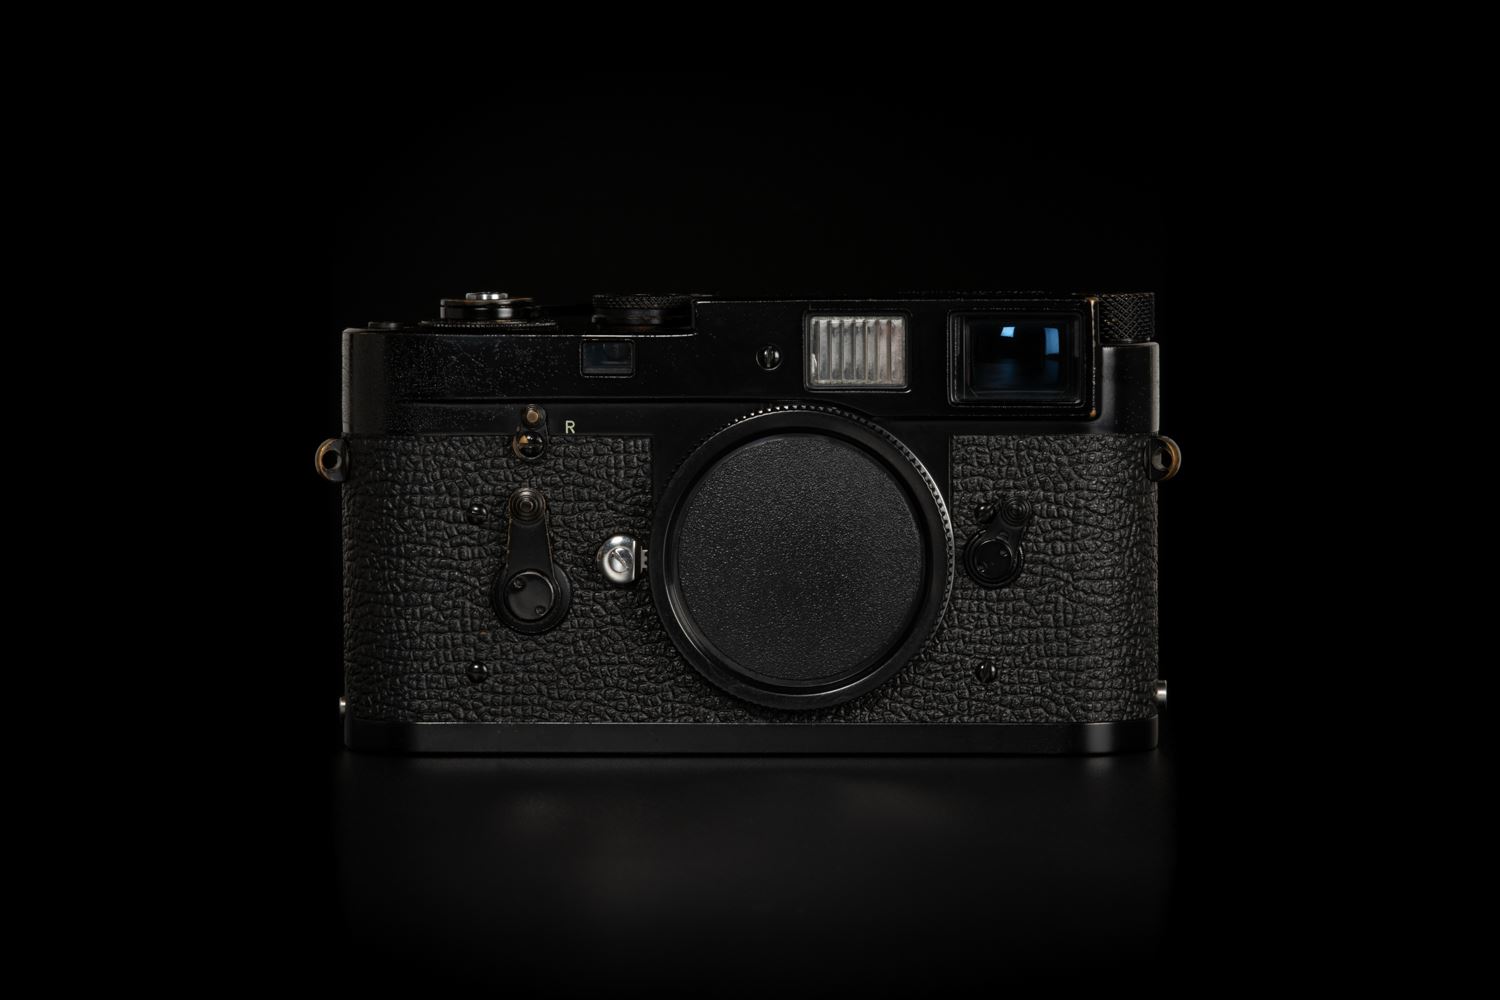 Picture of Leica M2 Original Black Paint